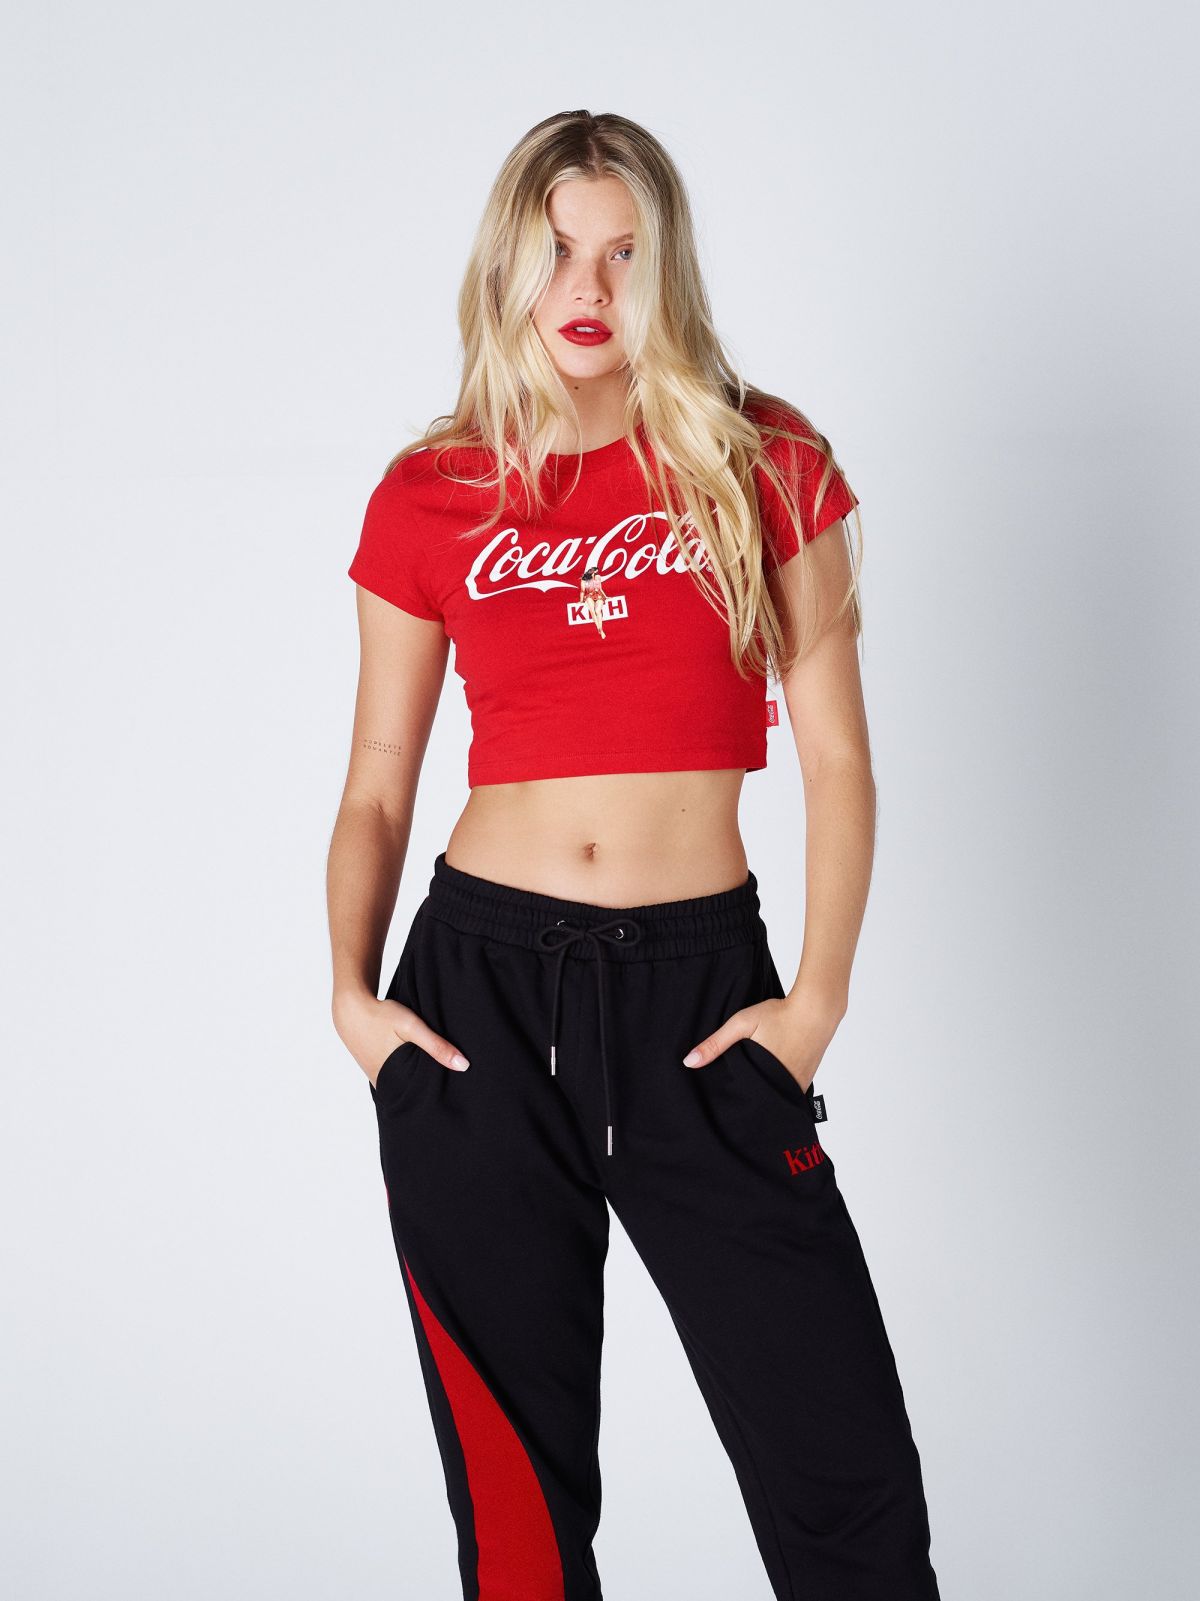 Shooting Josie Canseco Pour Coca Cola 3 Septembre 2019 